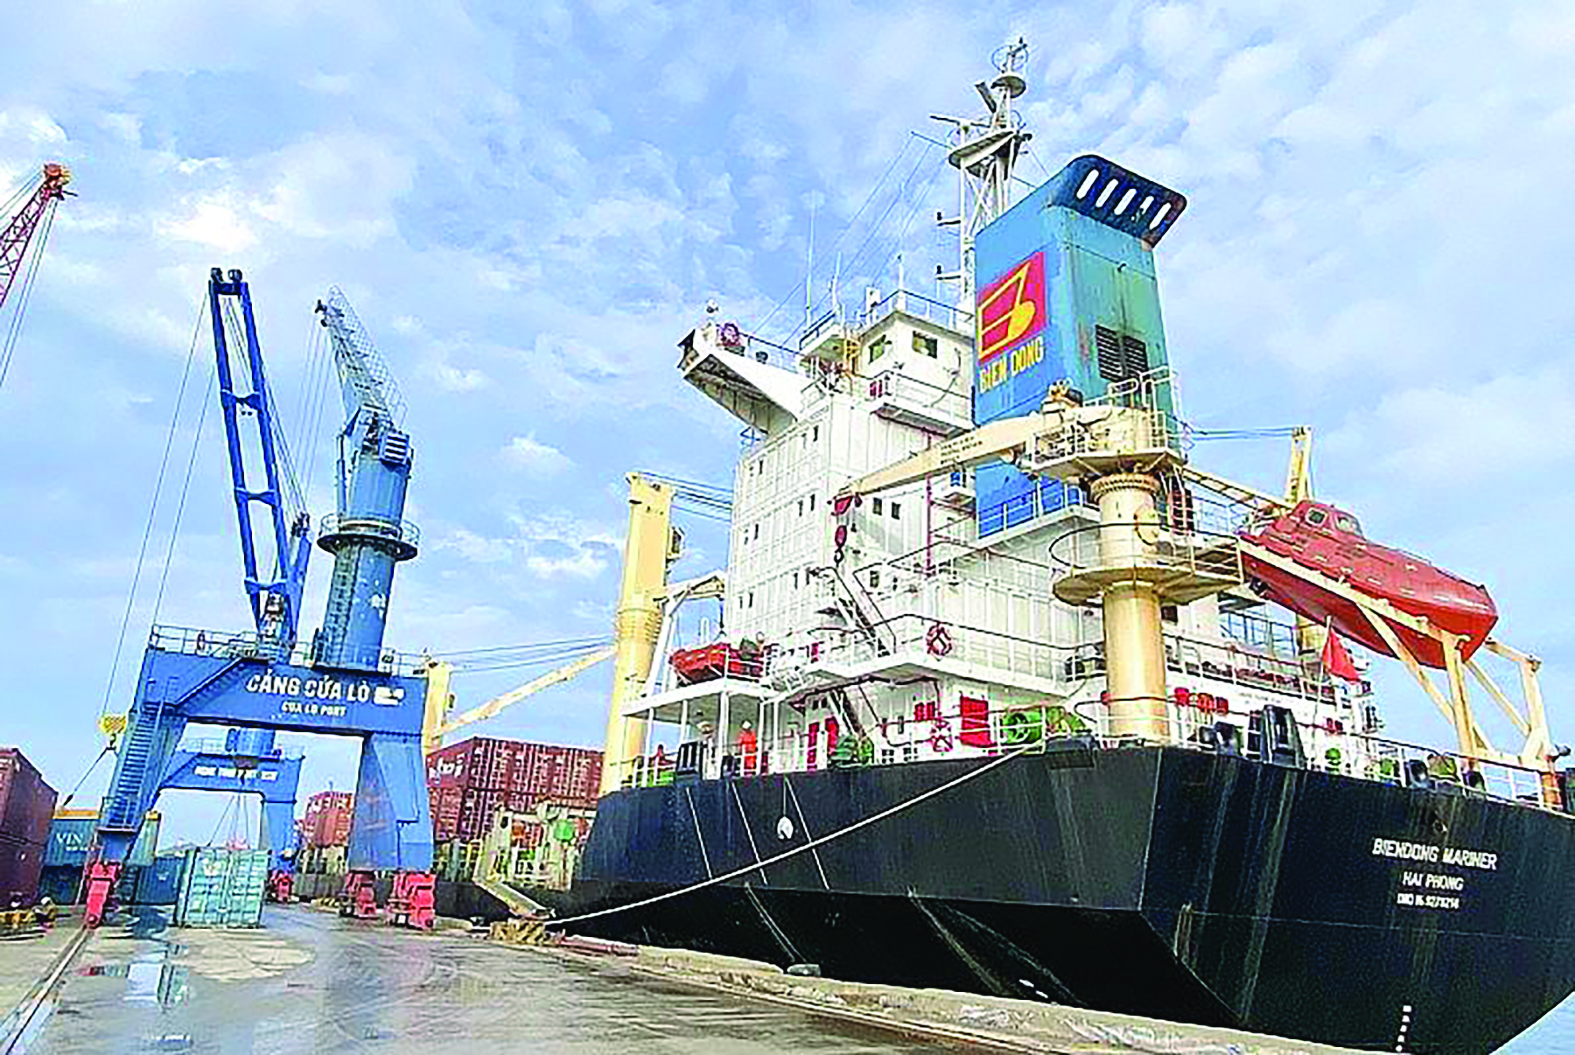  Nhiều “rào cản” về cơ chế, chính sách, hạ tầng kỹ thuật, dịch vụ logistics đã làm sụt giảm sức cạnh tranh của các doanh nghiệp xuất nhập khẩu ở Nghệ An